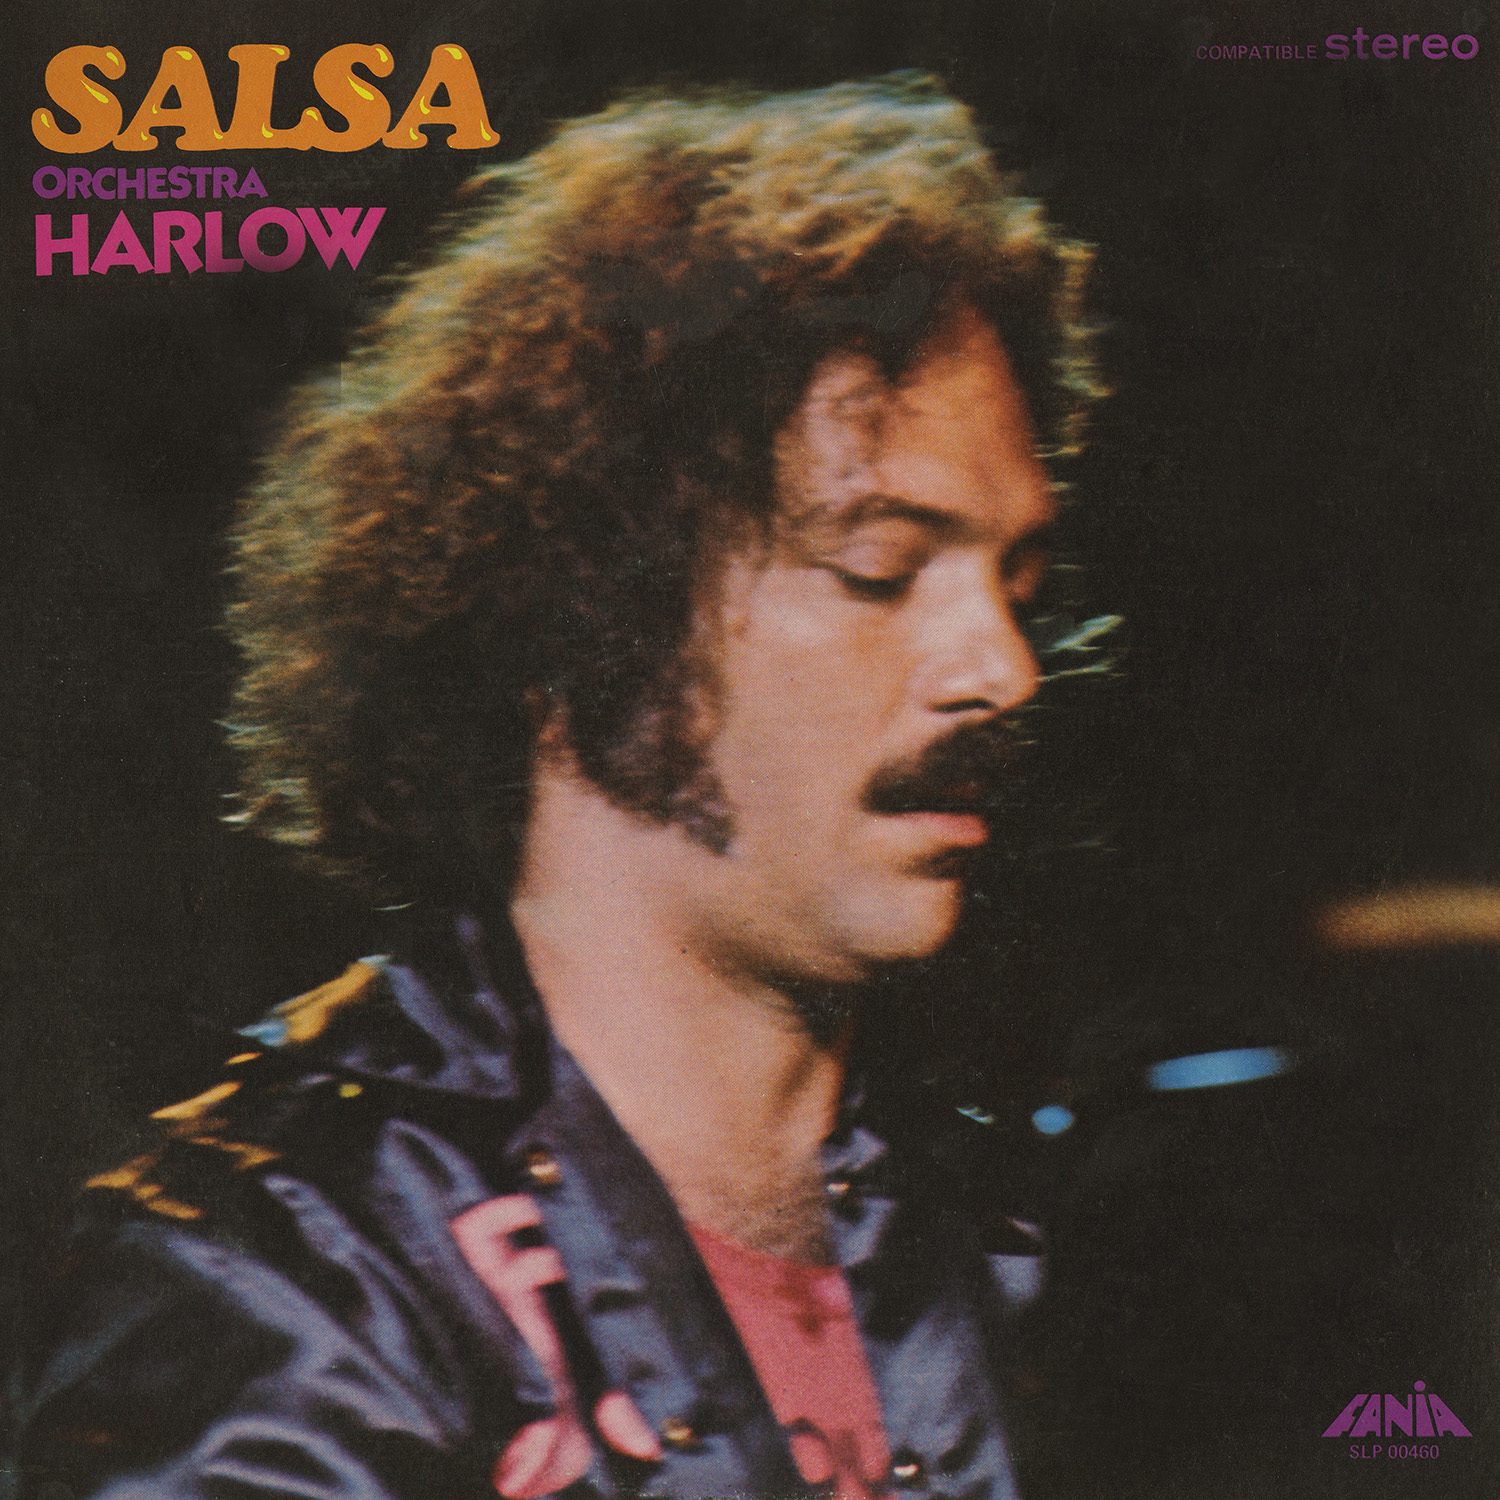 Imagen destacada de "Orquesta Harlow - Salsa"